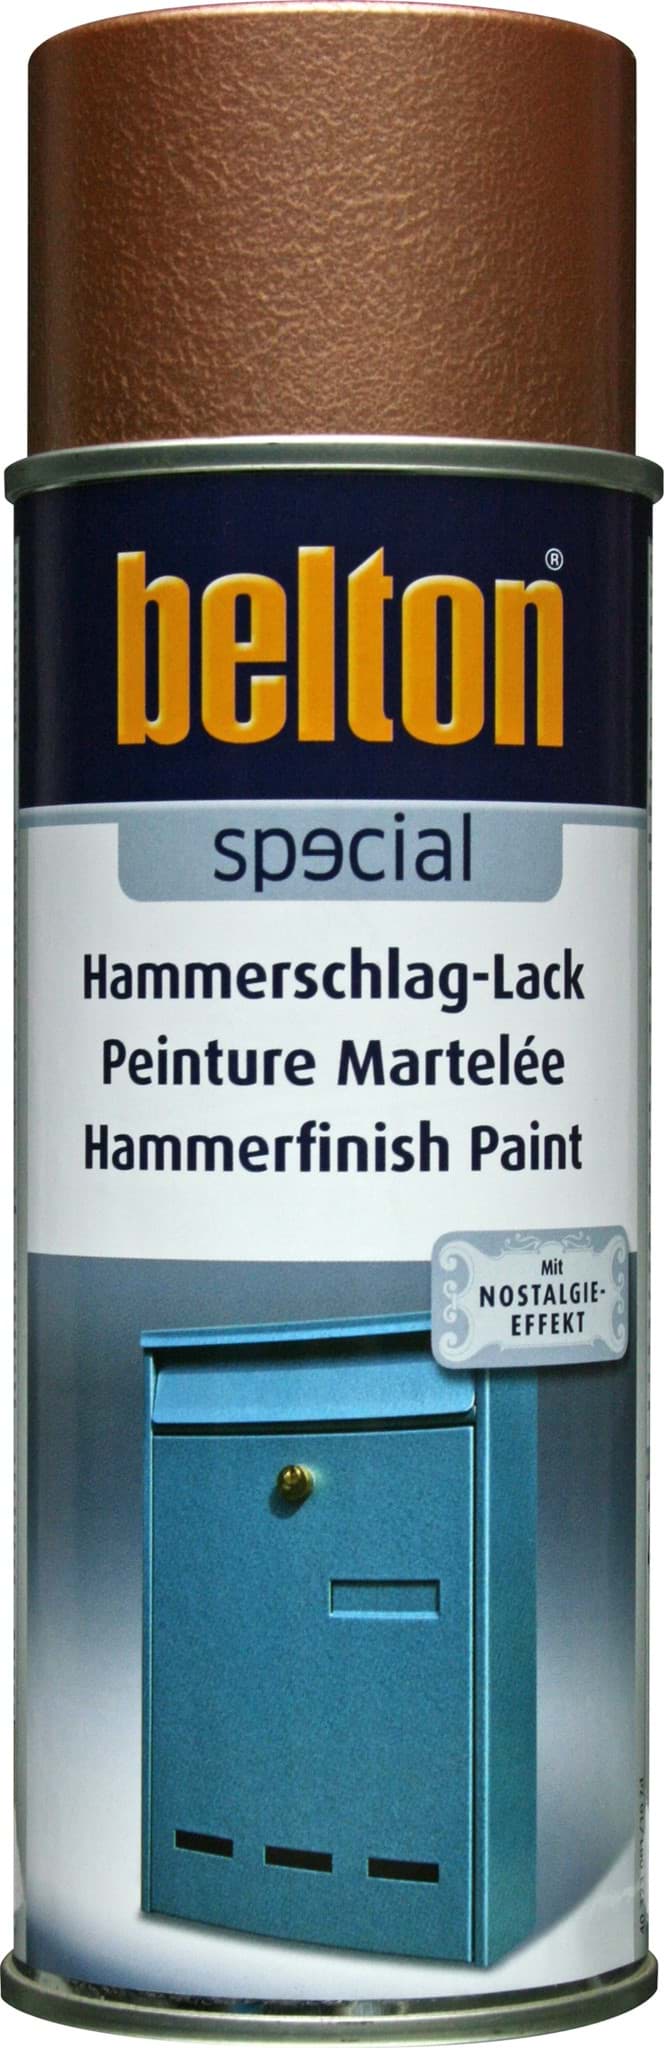 Belton special Hammerschlag-Lack kupfer resmi